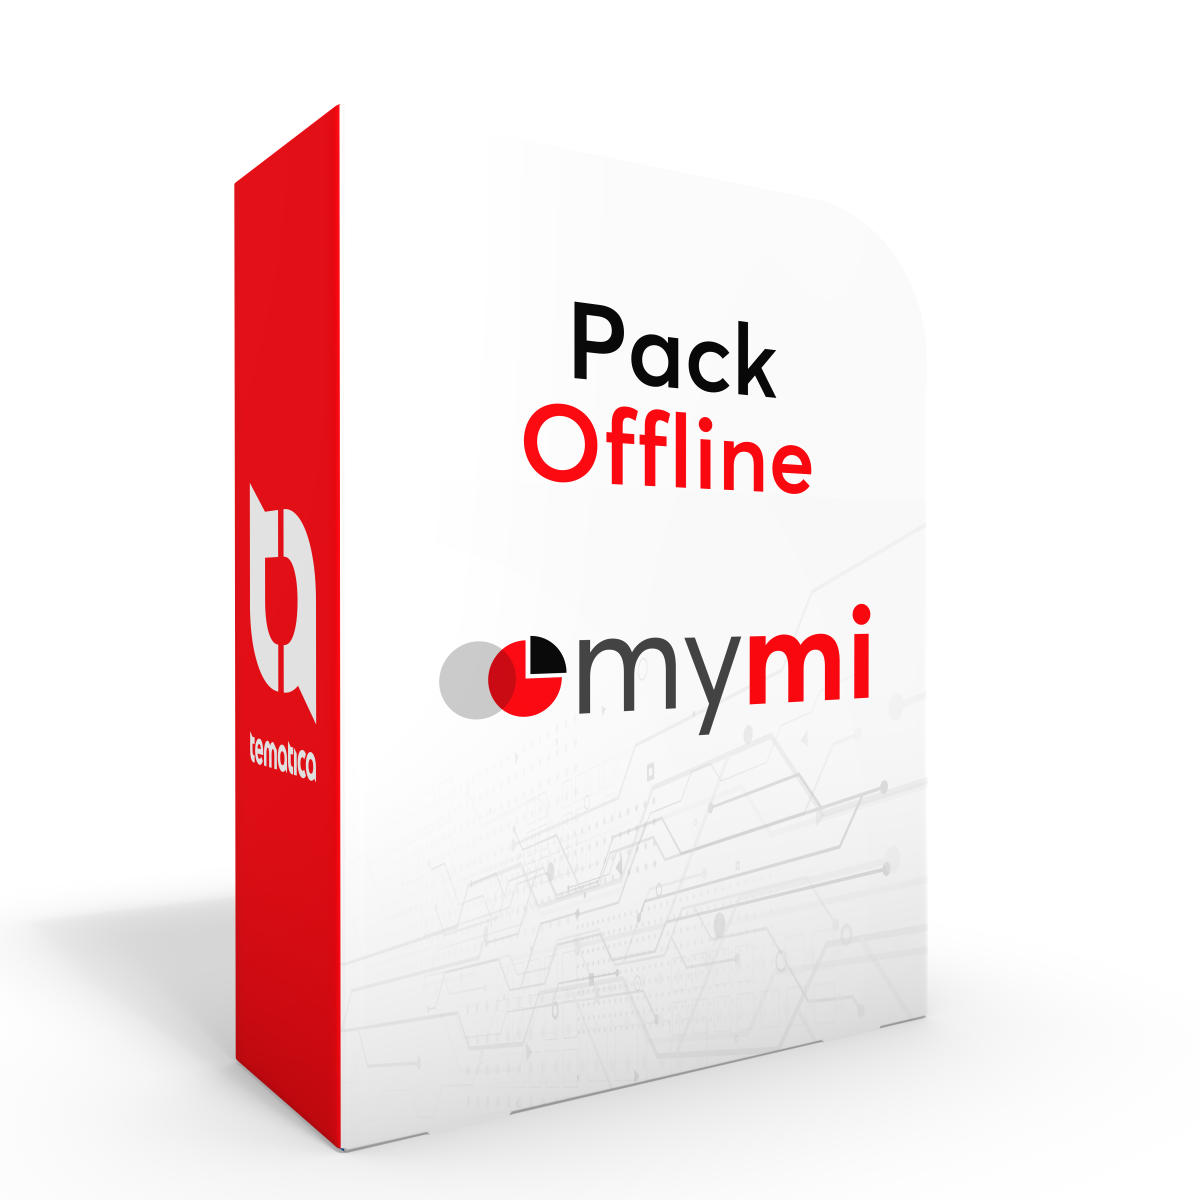 Pack offline - mymi